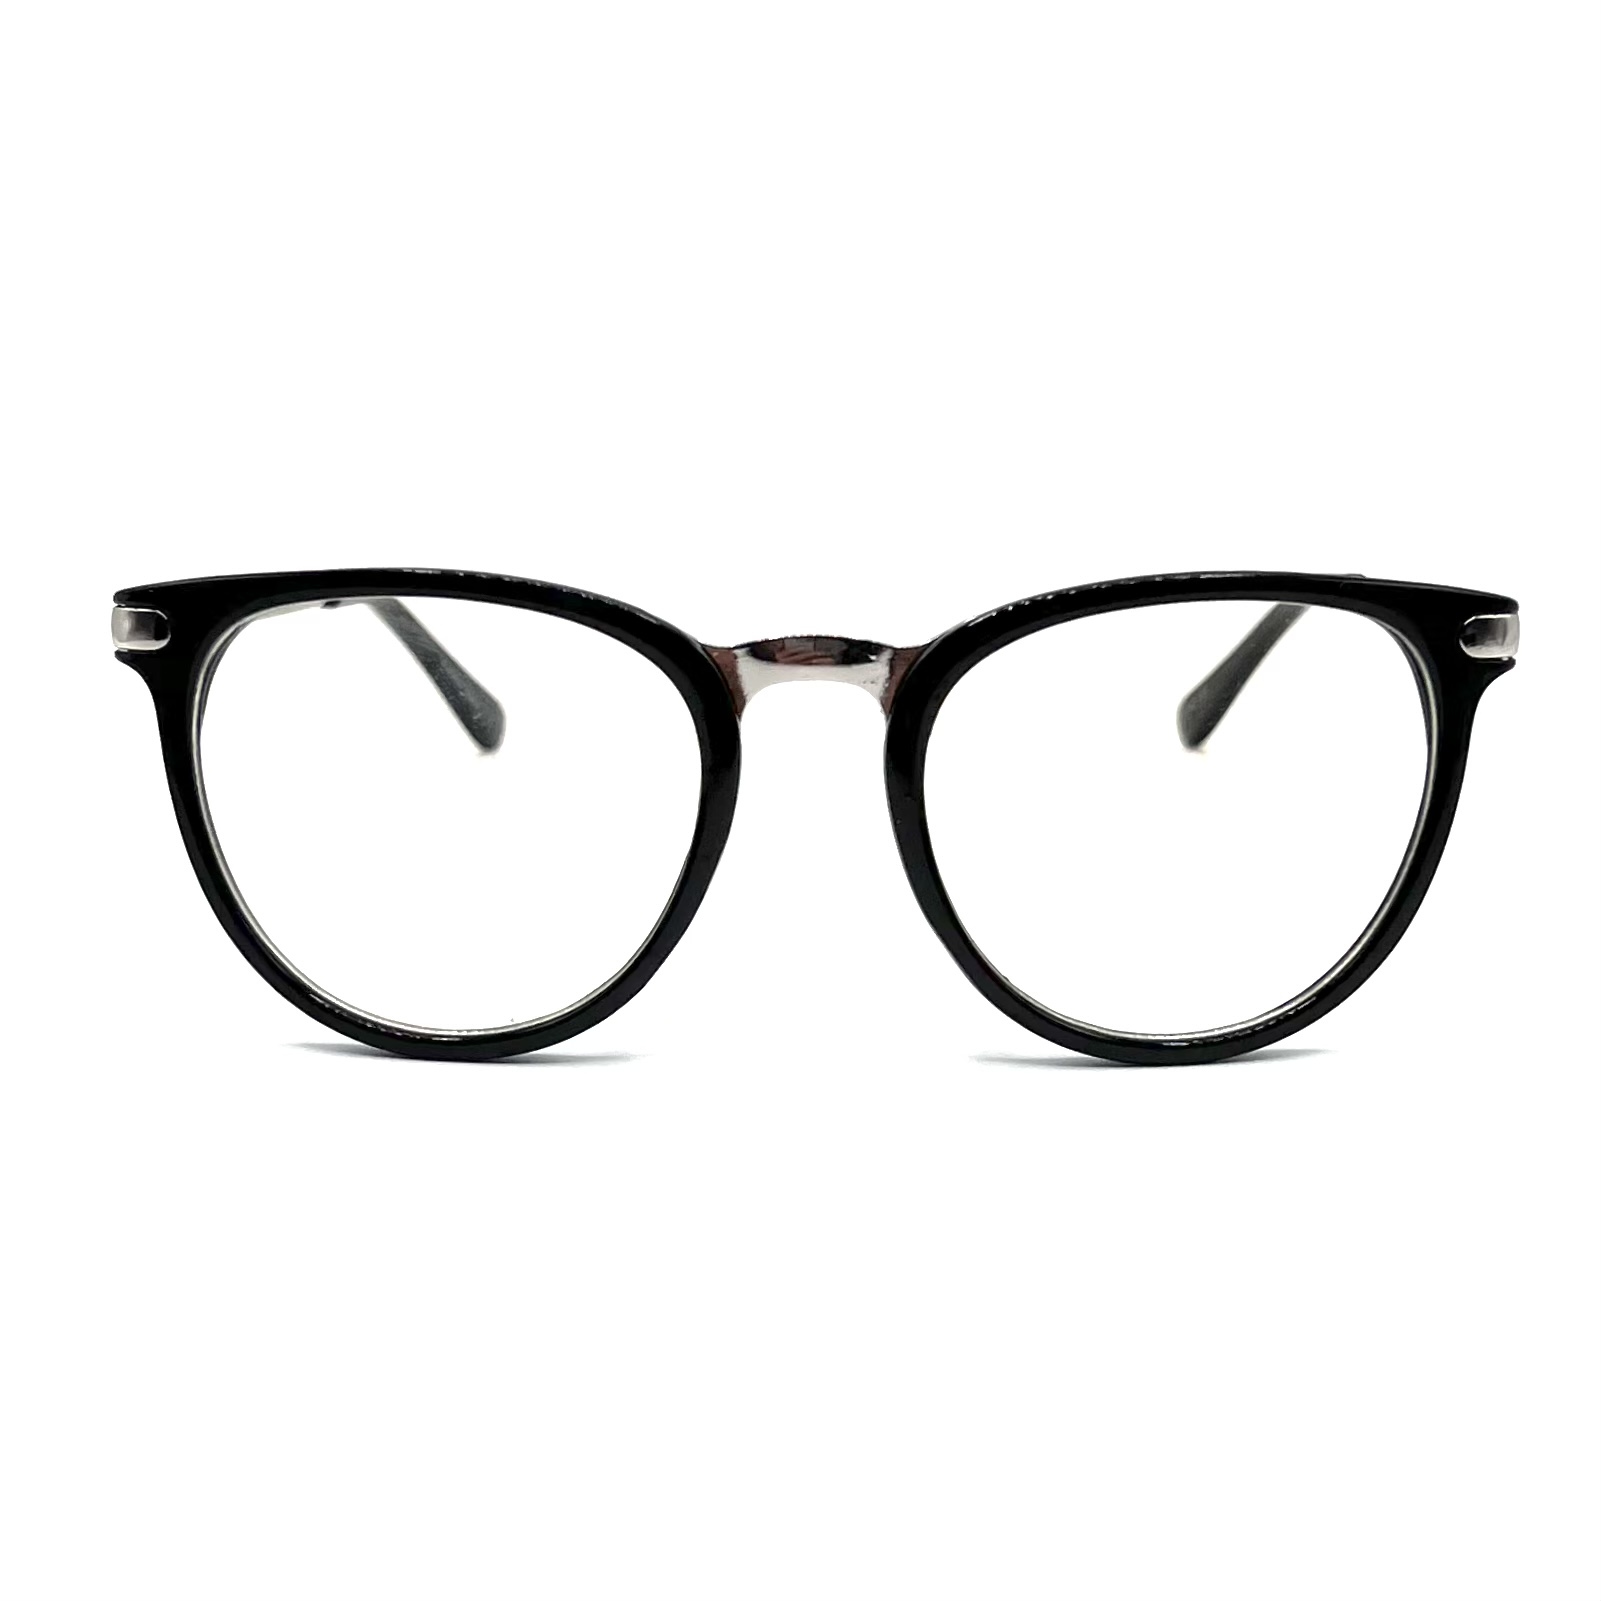 فریم عینک طبی مدل Hb 4510